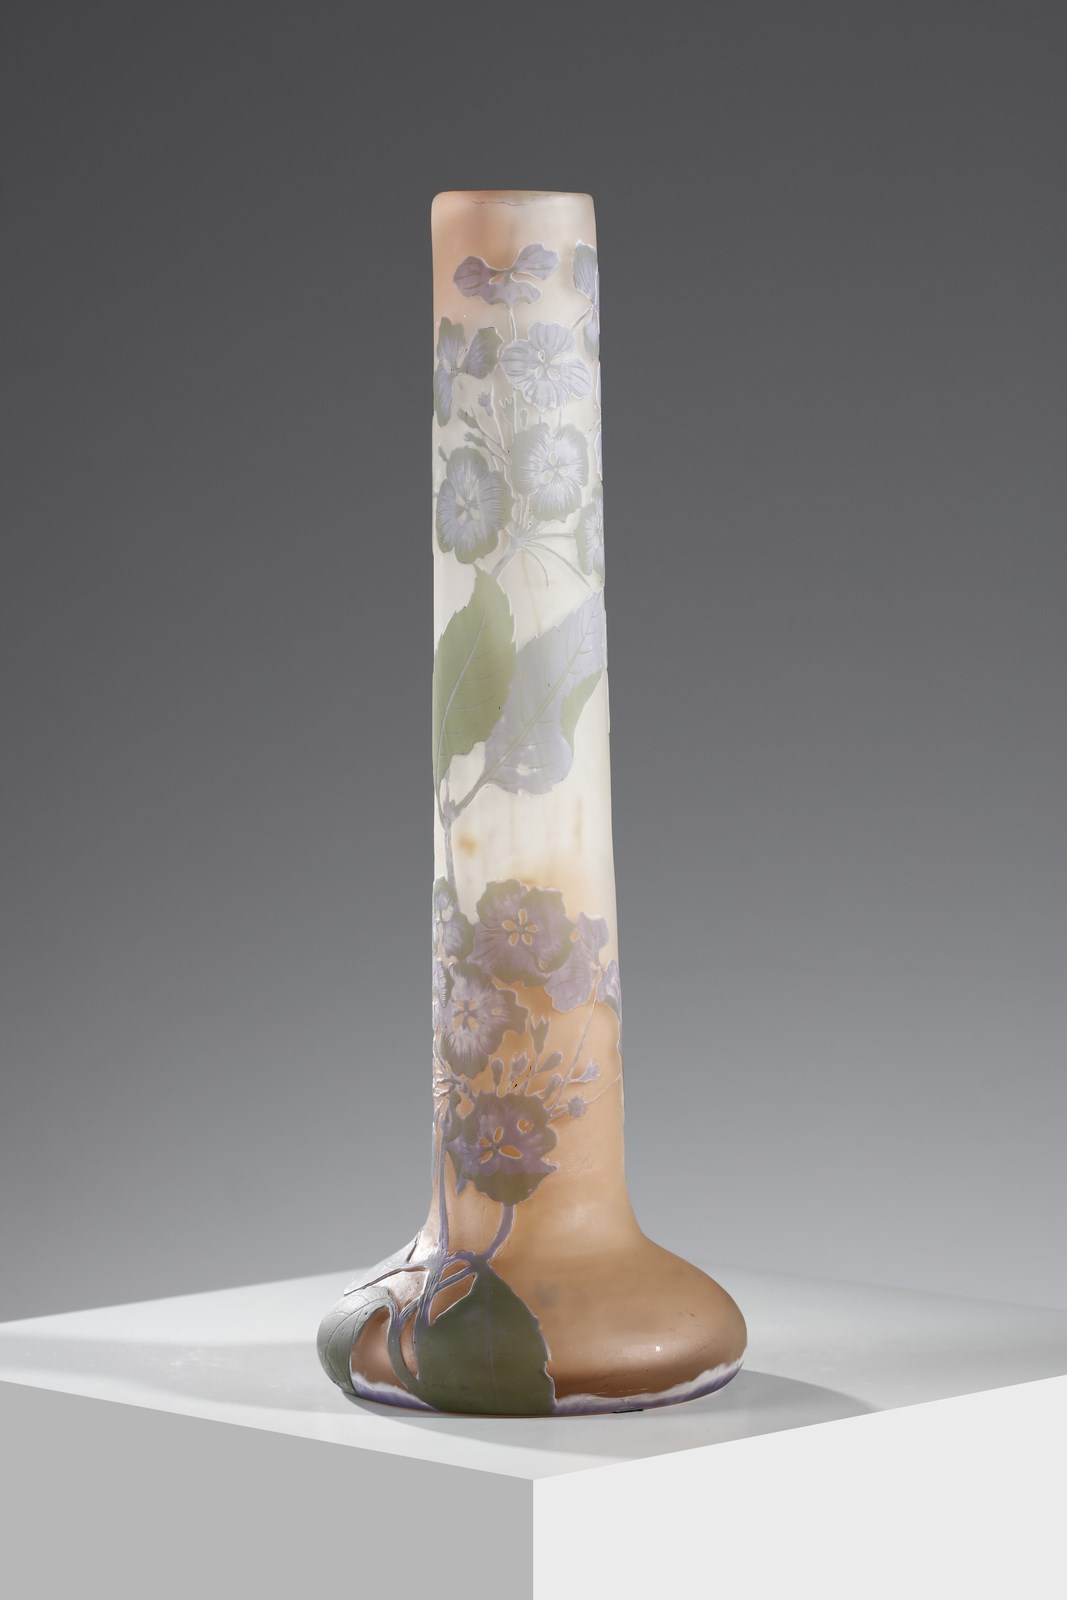 Vaso cilindrico con base a bulbo in vetro doppio, decoro di foglie e fiori nei toni del verde e del lilla, finemente inciso ad acido su fondo rosato ( Gallé)